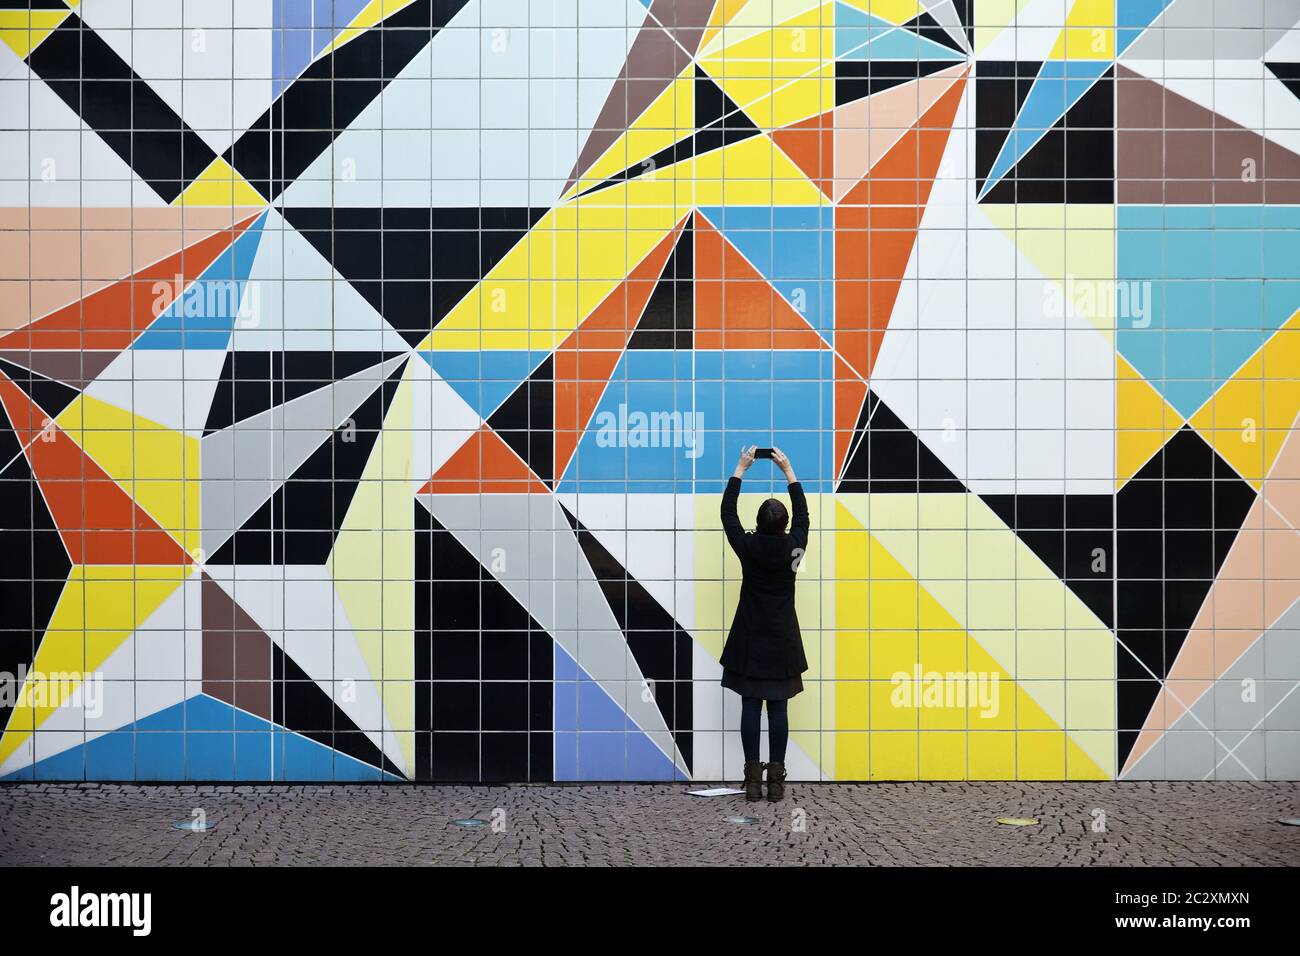 Frau, die ein Foto des Kunstwerks Hornet, Düsseldorf, Nordrhein-Westfalen, Deutschland, Europa macht Stockfoto